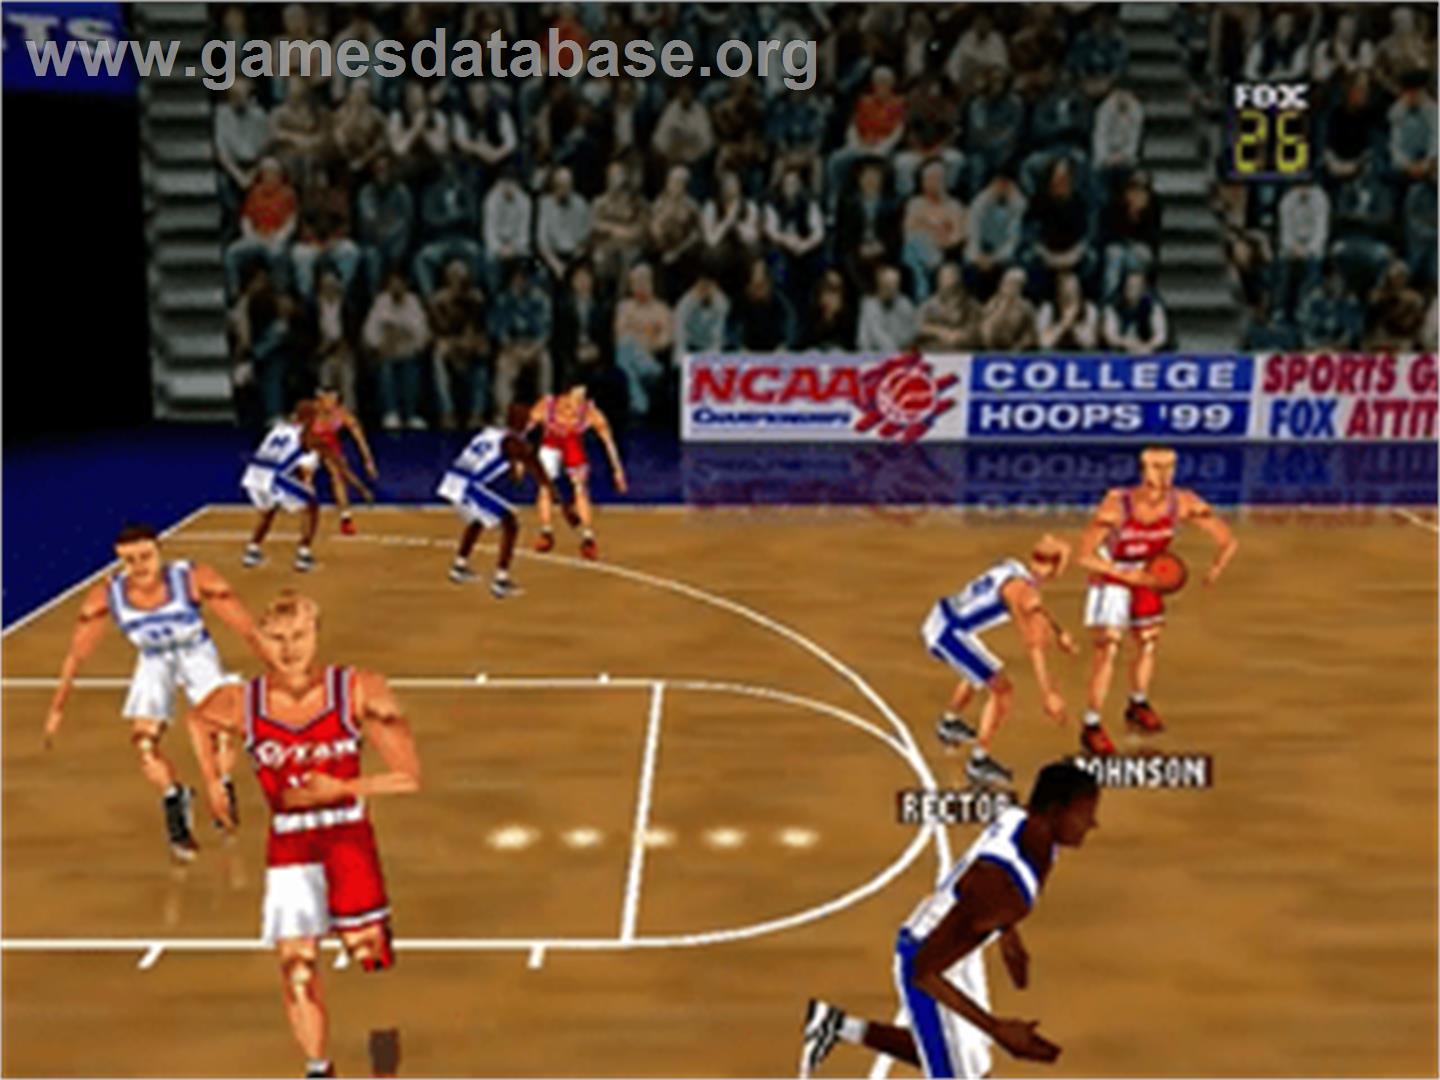 Fox Sports College Hoops '99 - Nintendo N64 - Artwork - In Game